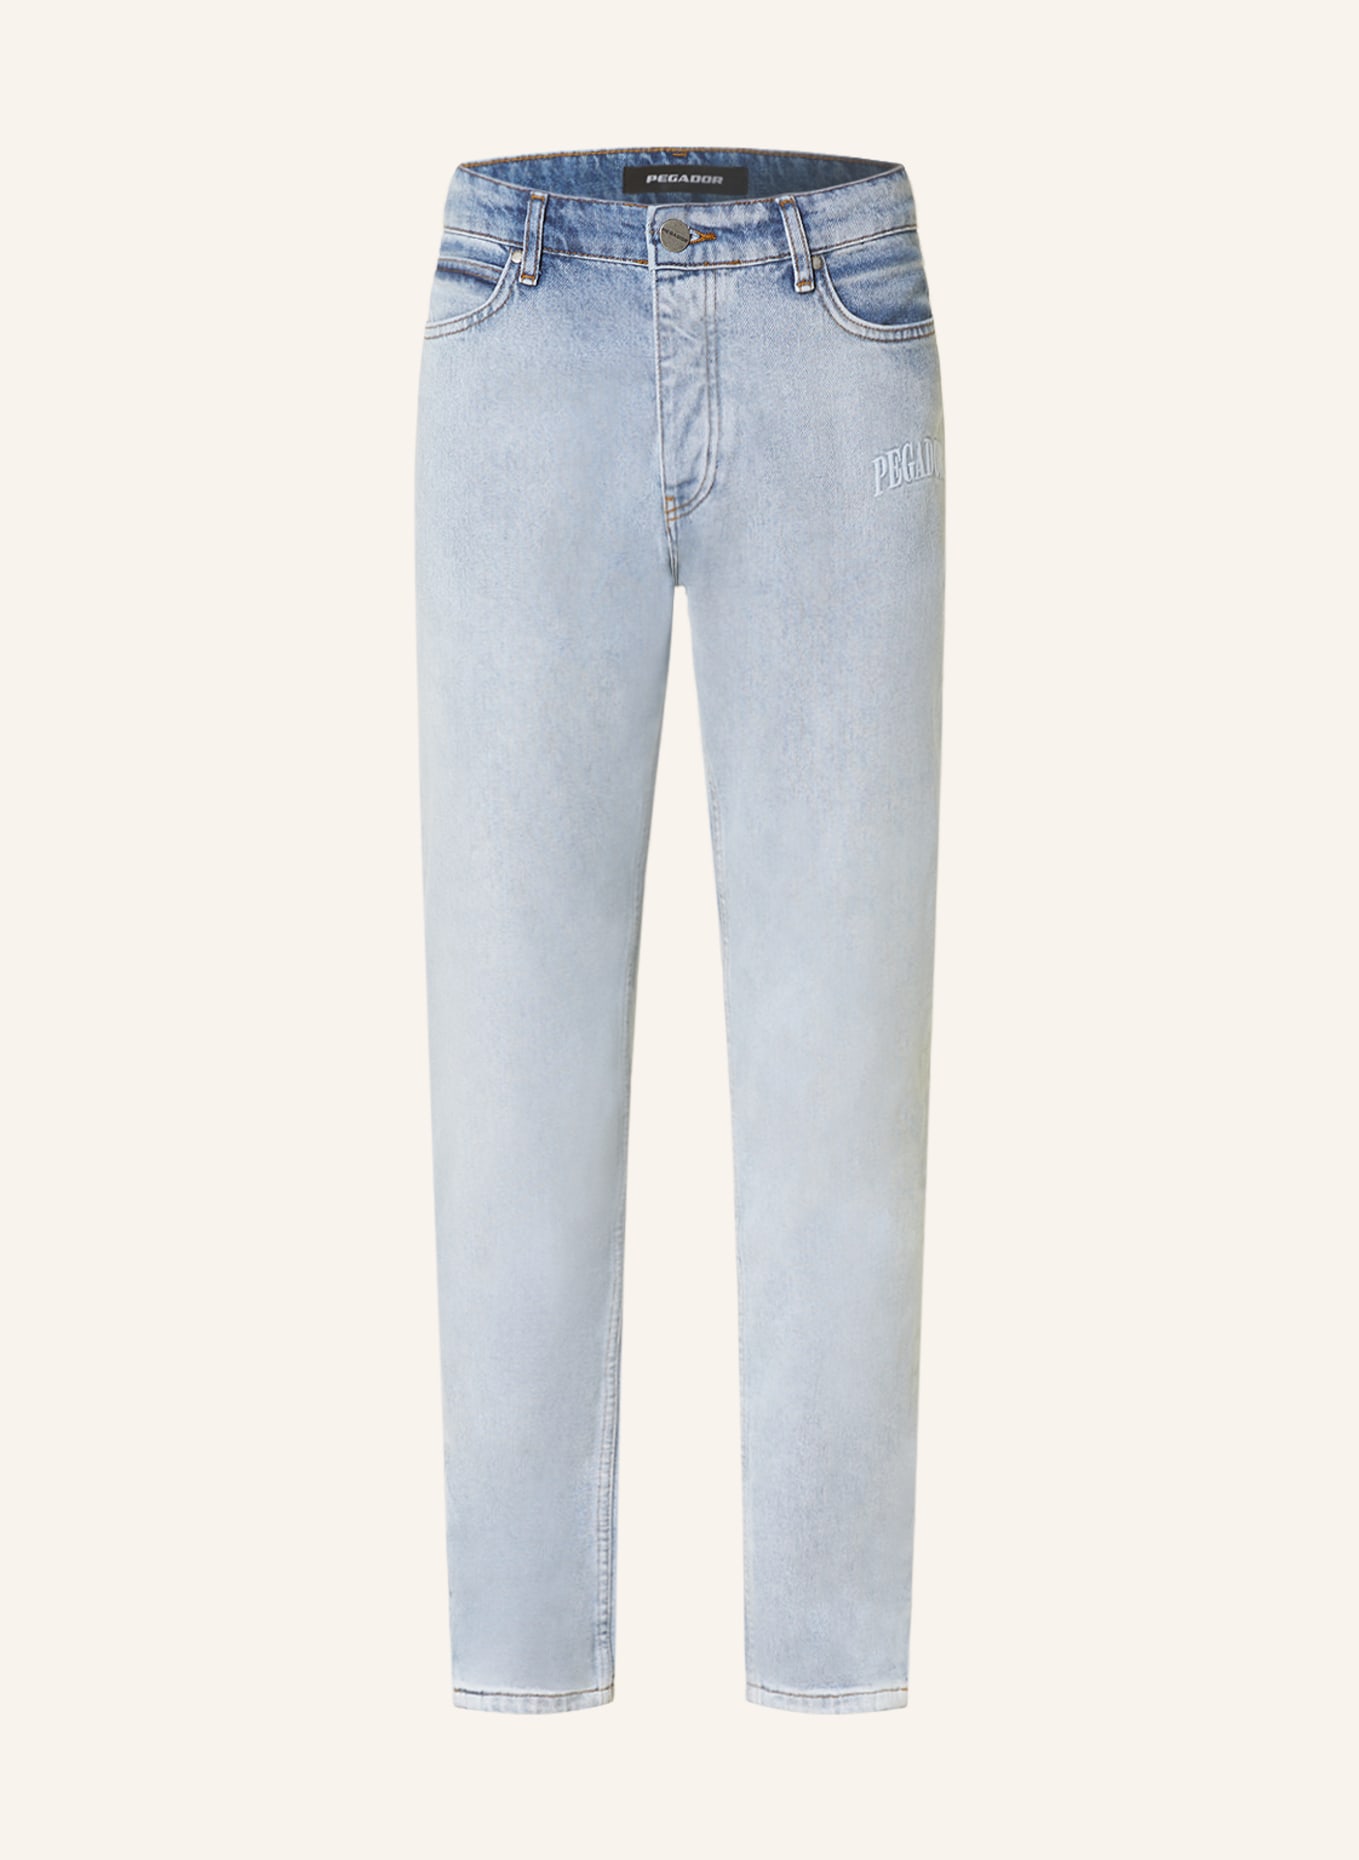 PEGADOR Jeans CARPE Extra slim fit, Color: 076 washed light blue (Image 1)